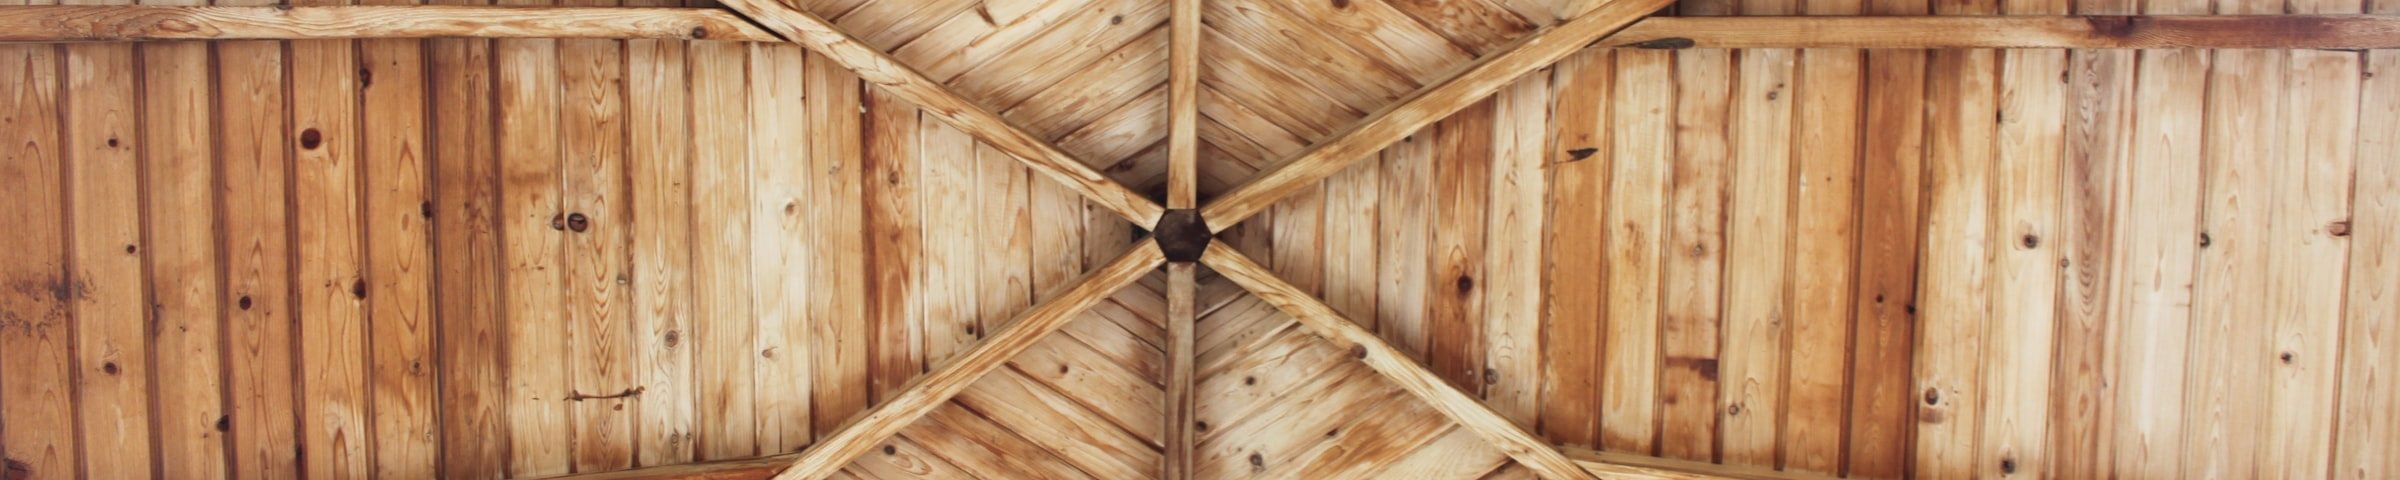 Offener Dachstuhl aus Holz von unten fotografiert